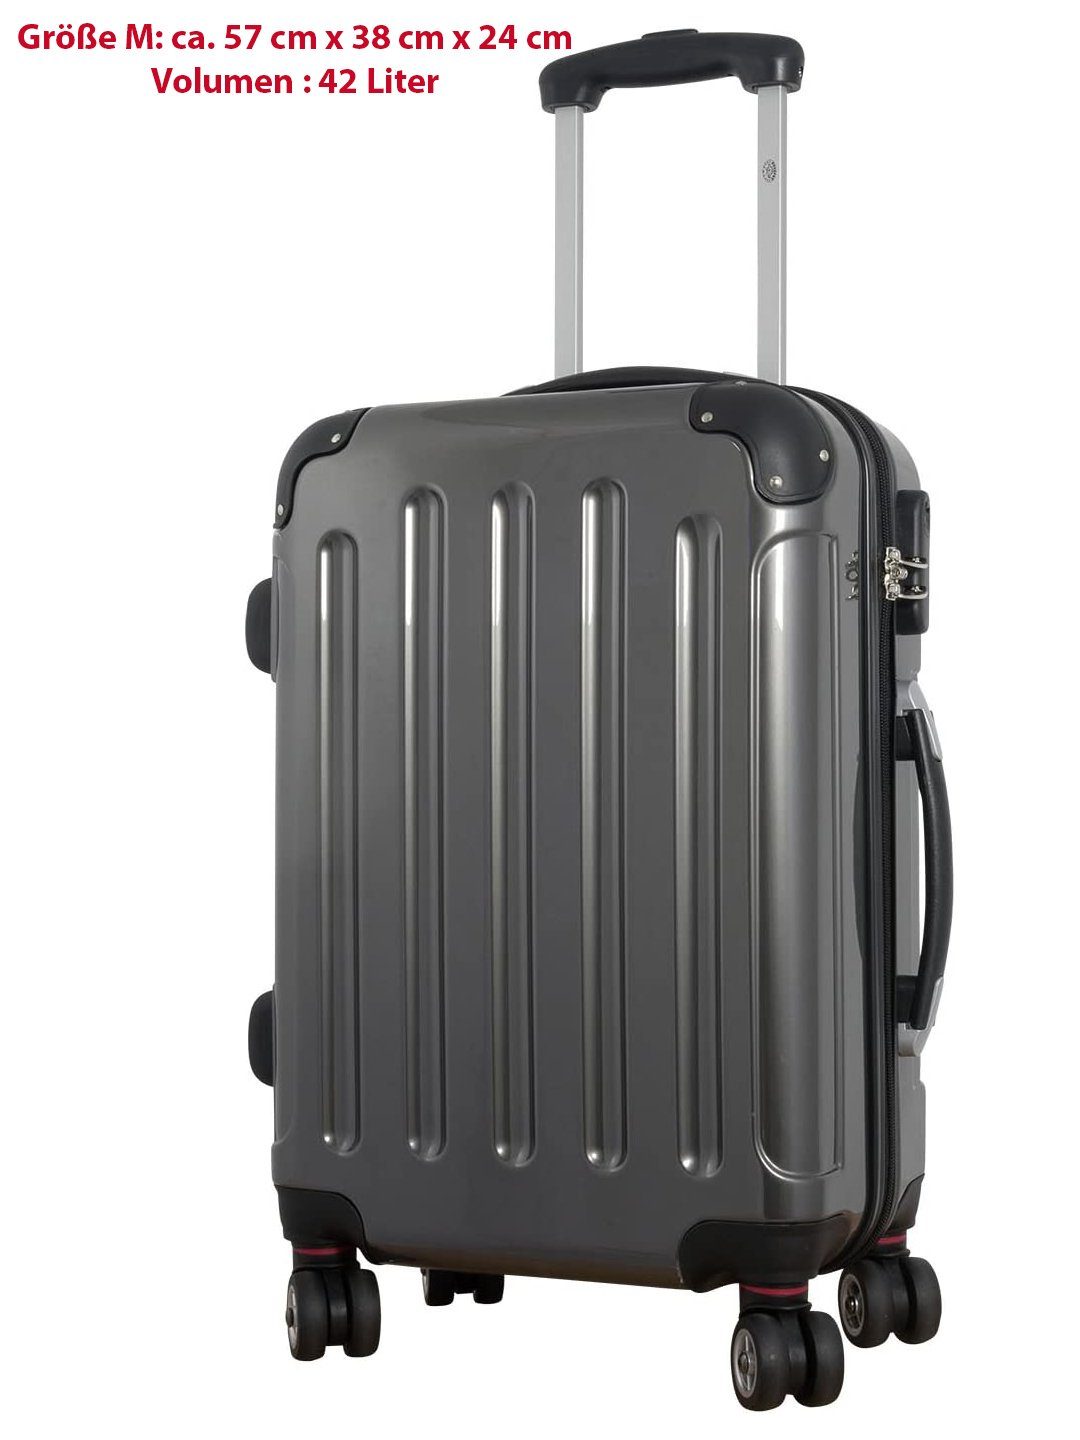 Handgepäck Koffer online kaufen | OTTO